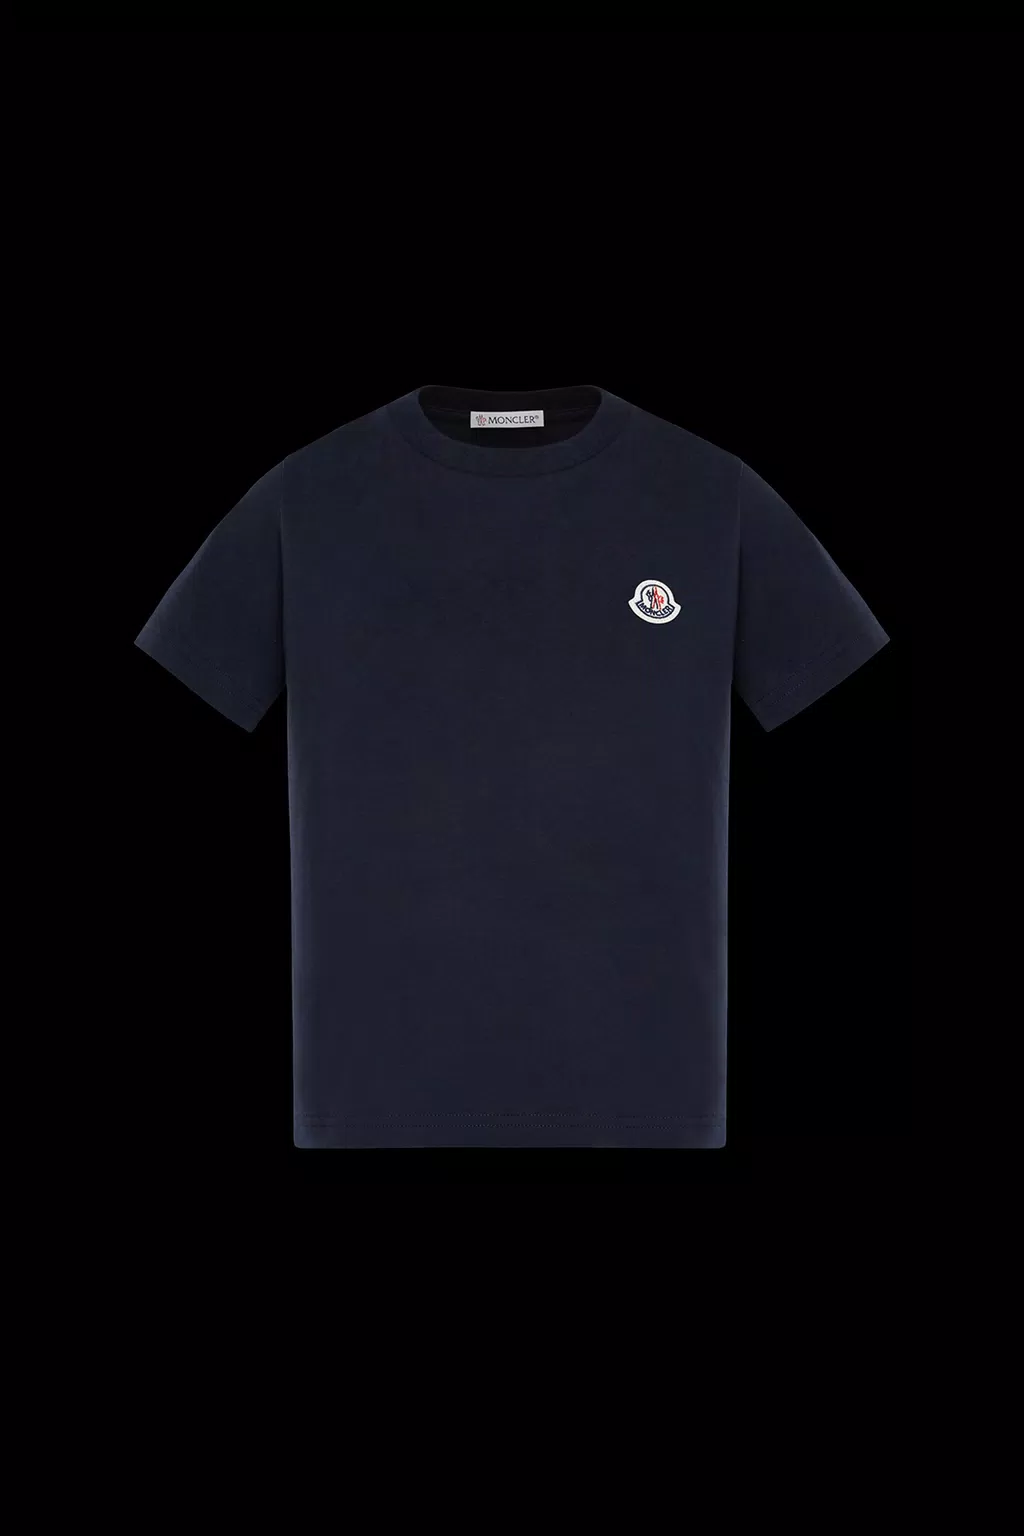 Tシャツ ジェンダーニュートラル ナイトブルー Moncler 1